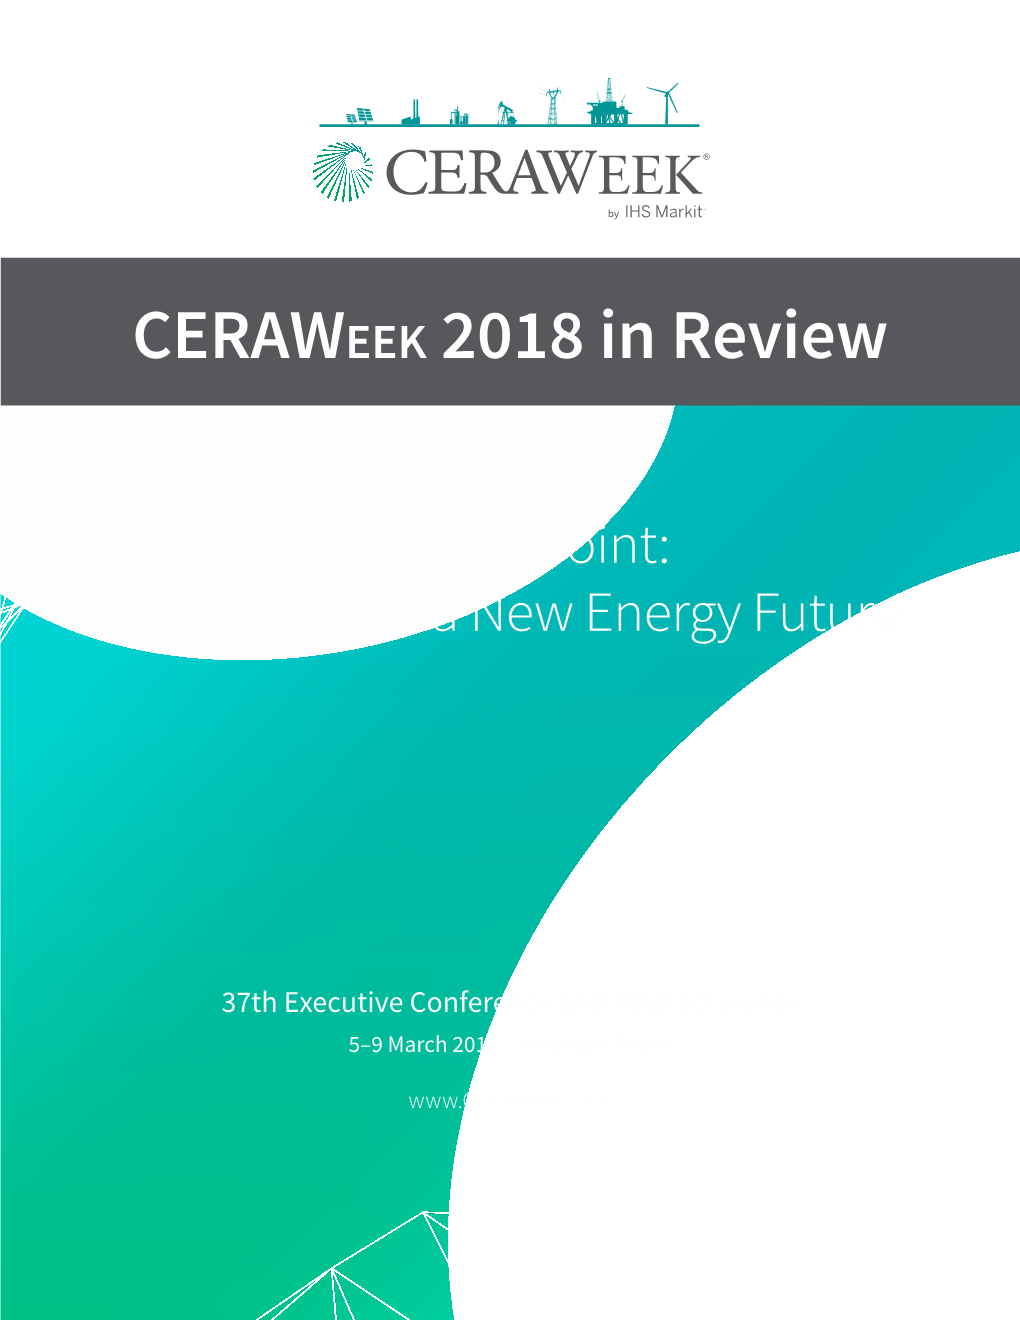 Ceraweek 2018 in Review